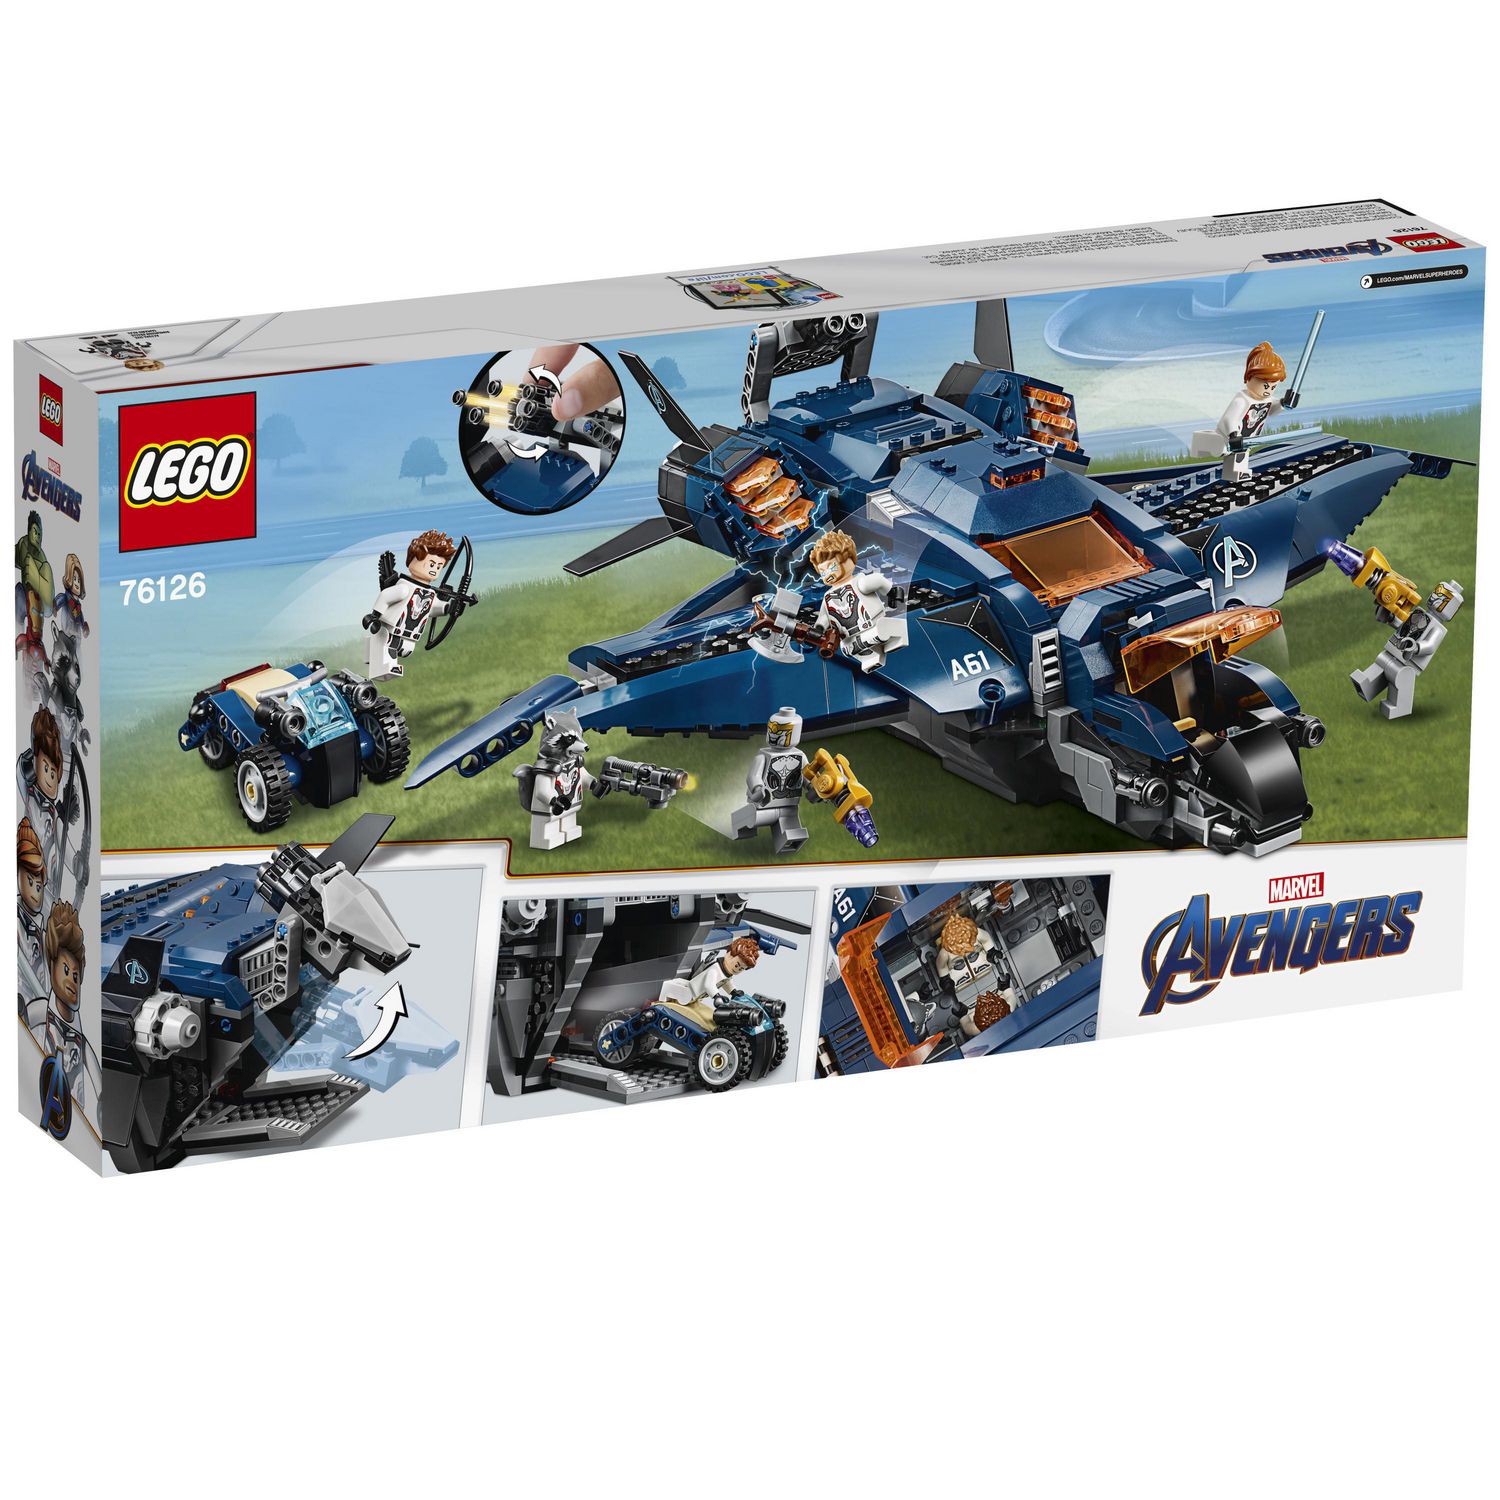 LEGO Marvel Avengers: Avengers Ultimate Quinjet 76126 Toy Building Kit